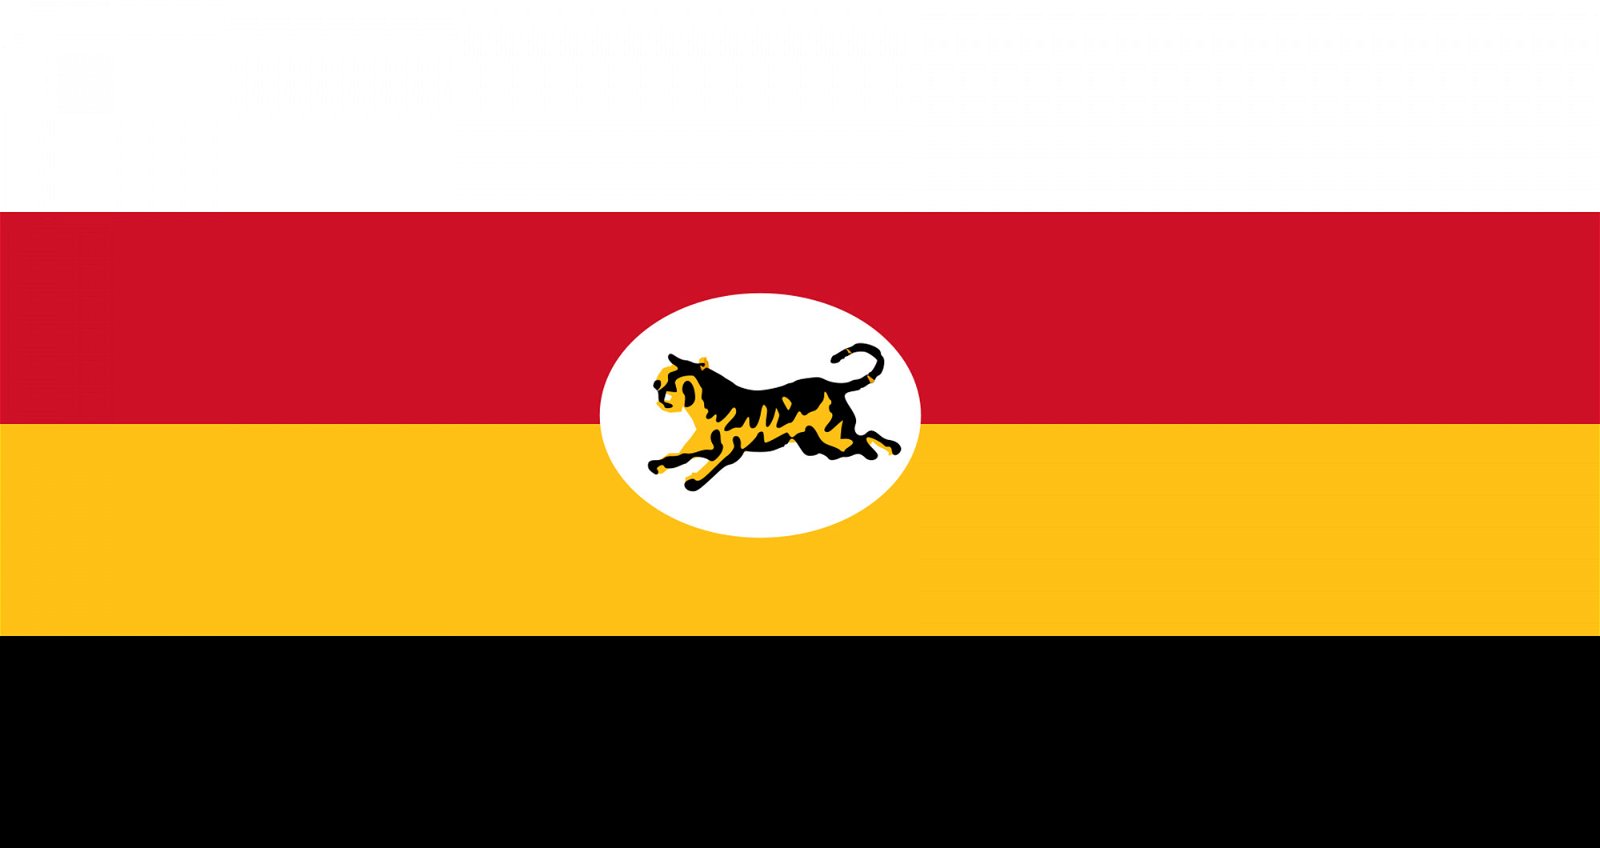 英国殖民地时期，英国给马来联邦制定了旗帜。这面旗帜由自上而下为白、红、黄、黑四色所组成，旗帜中心为白色圆形，圈内有一只马来虎。